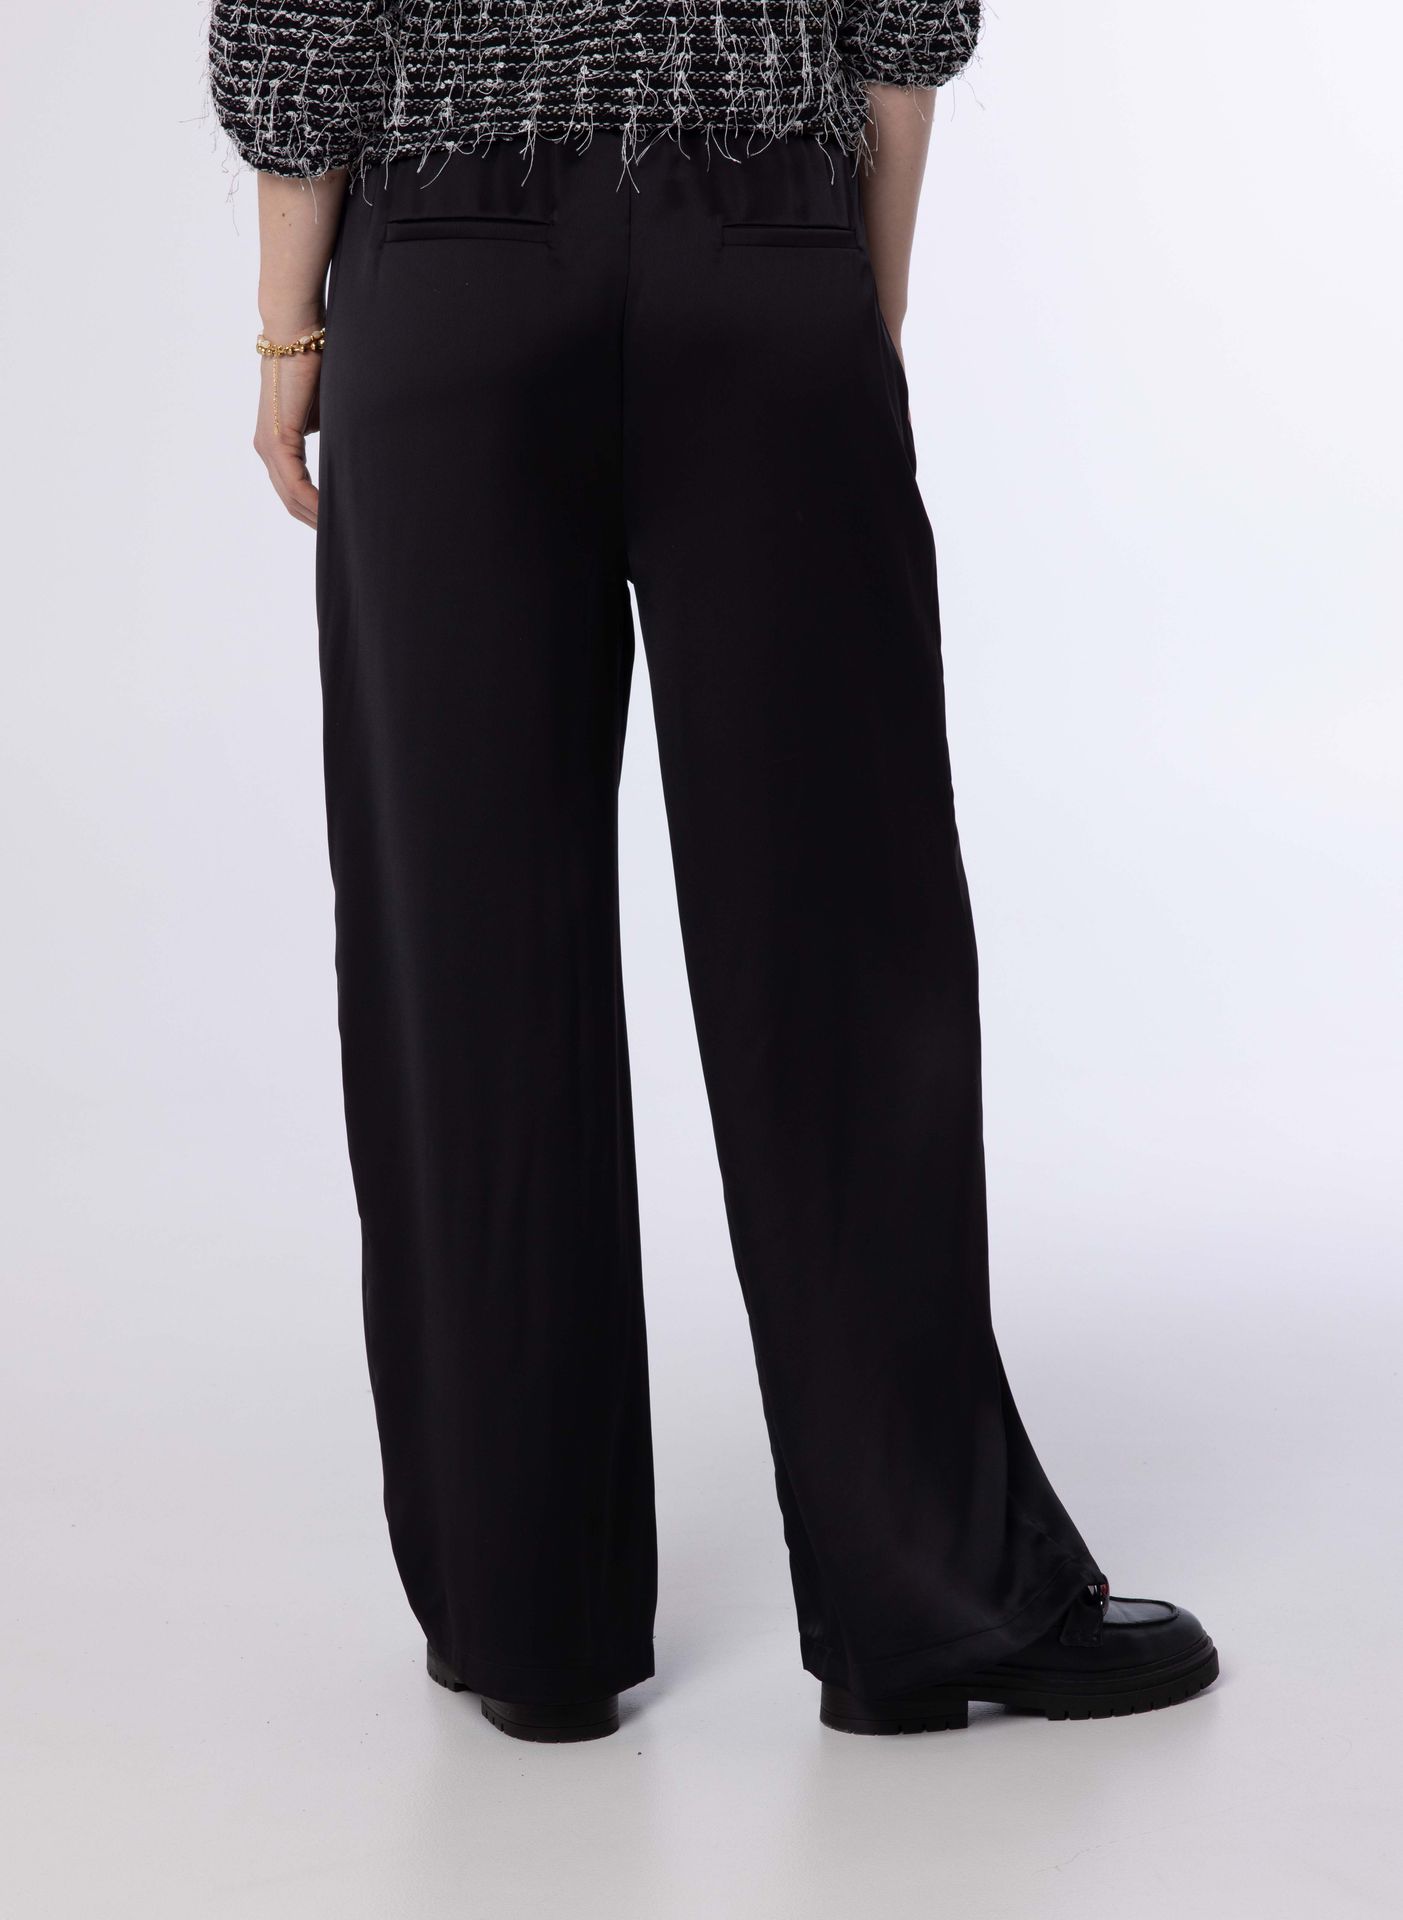 Norah Zwarte broek van polyester-satijn black 214234-001